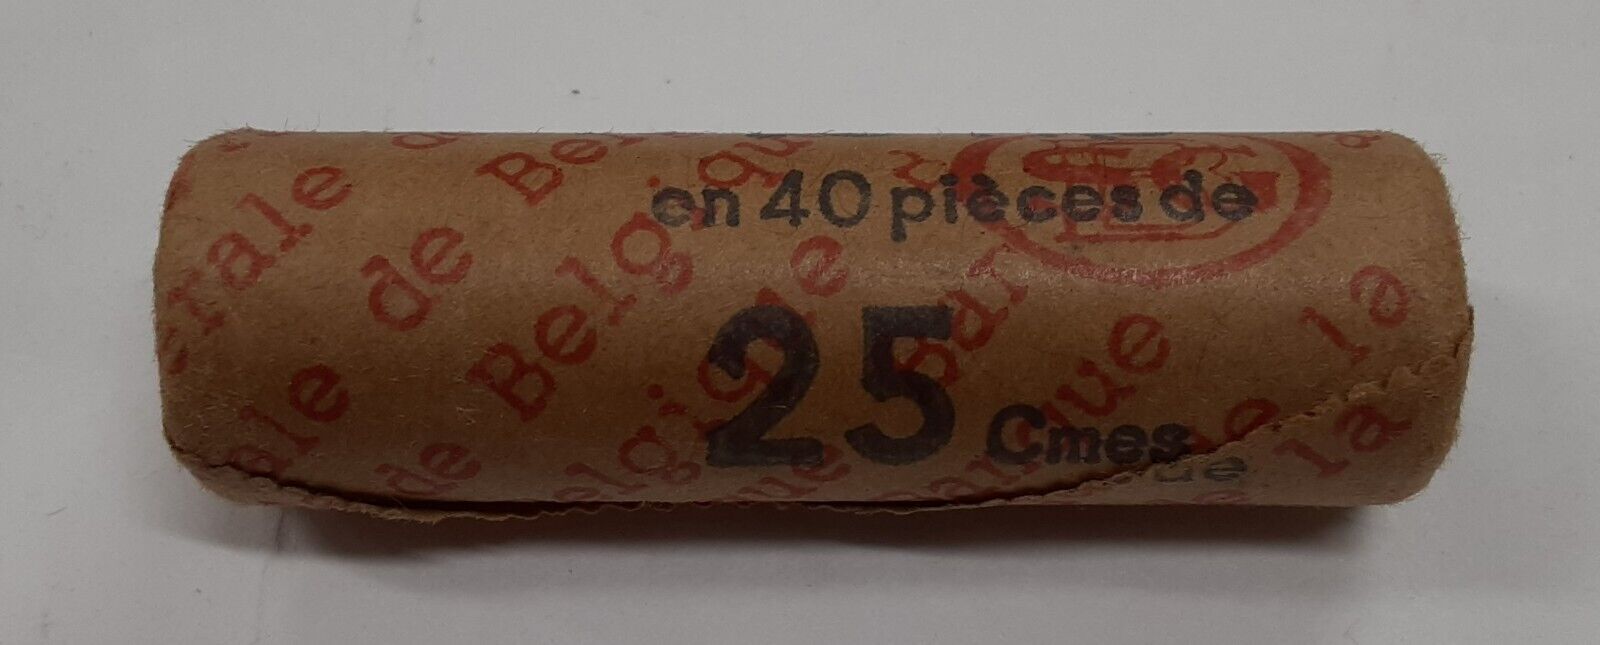 1965 Belgium Roll of 40 BU 25 Centimes Coins W/Dutch Legends in Original Wrapper